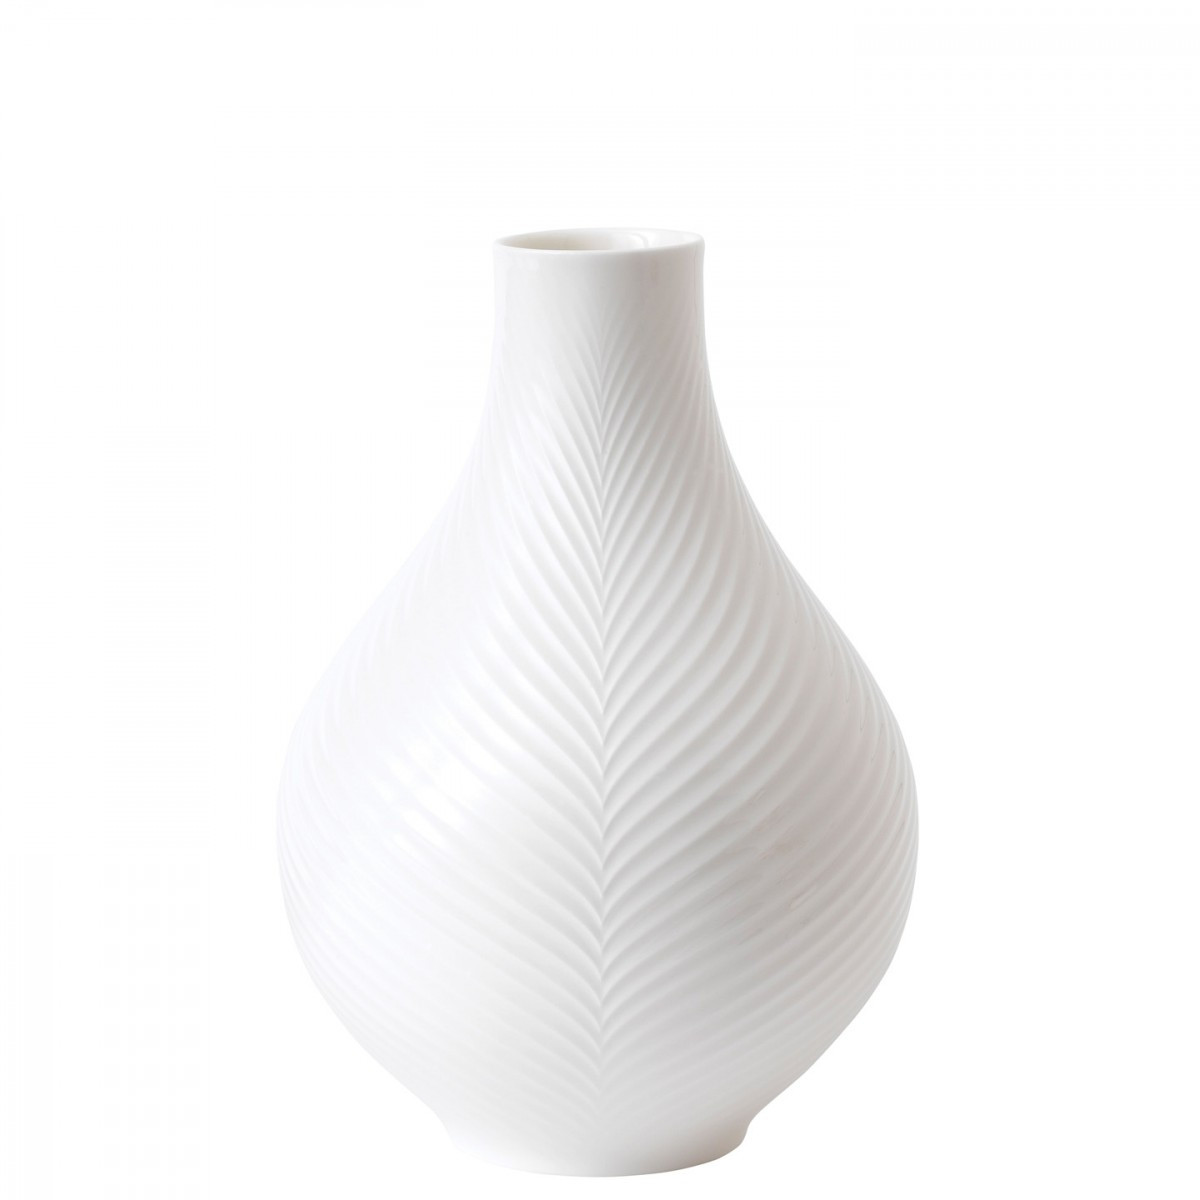 19 Fabulous Wedgwood Bud Vase 2022 free download wedgwood bud vase of white folia bulb vase 23cm wedgwooda uk regarding white folia bulb vase 23cm